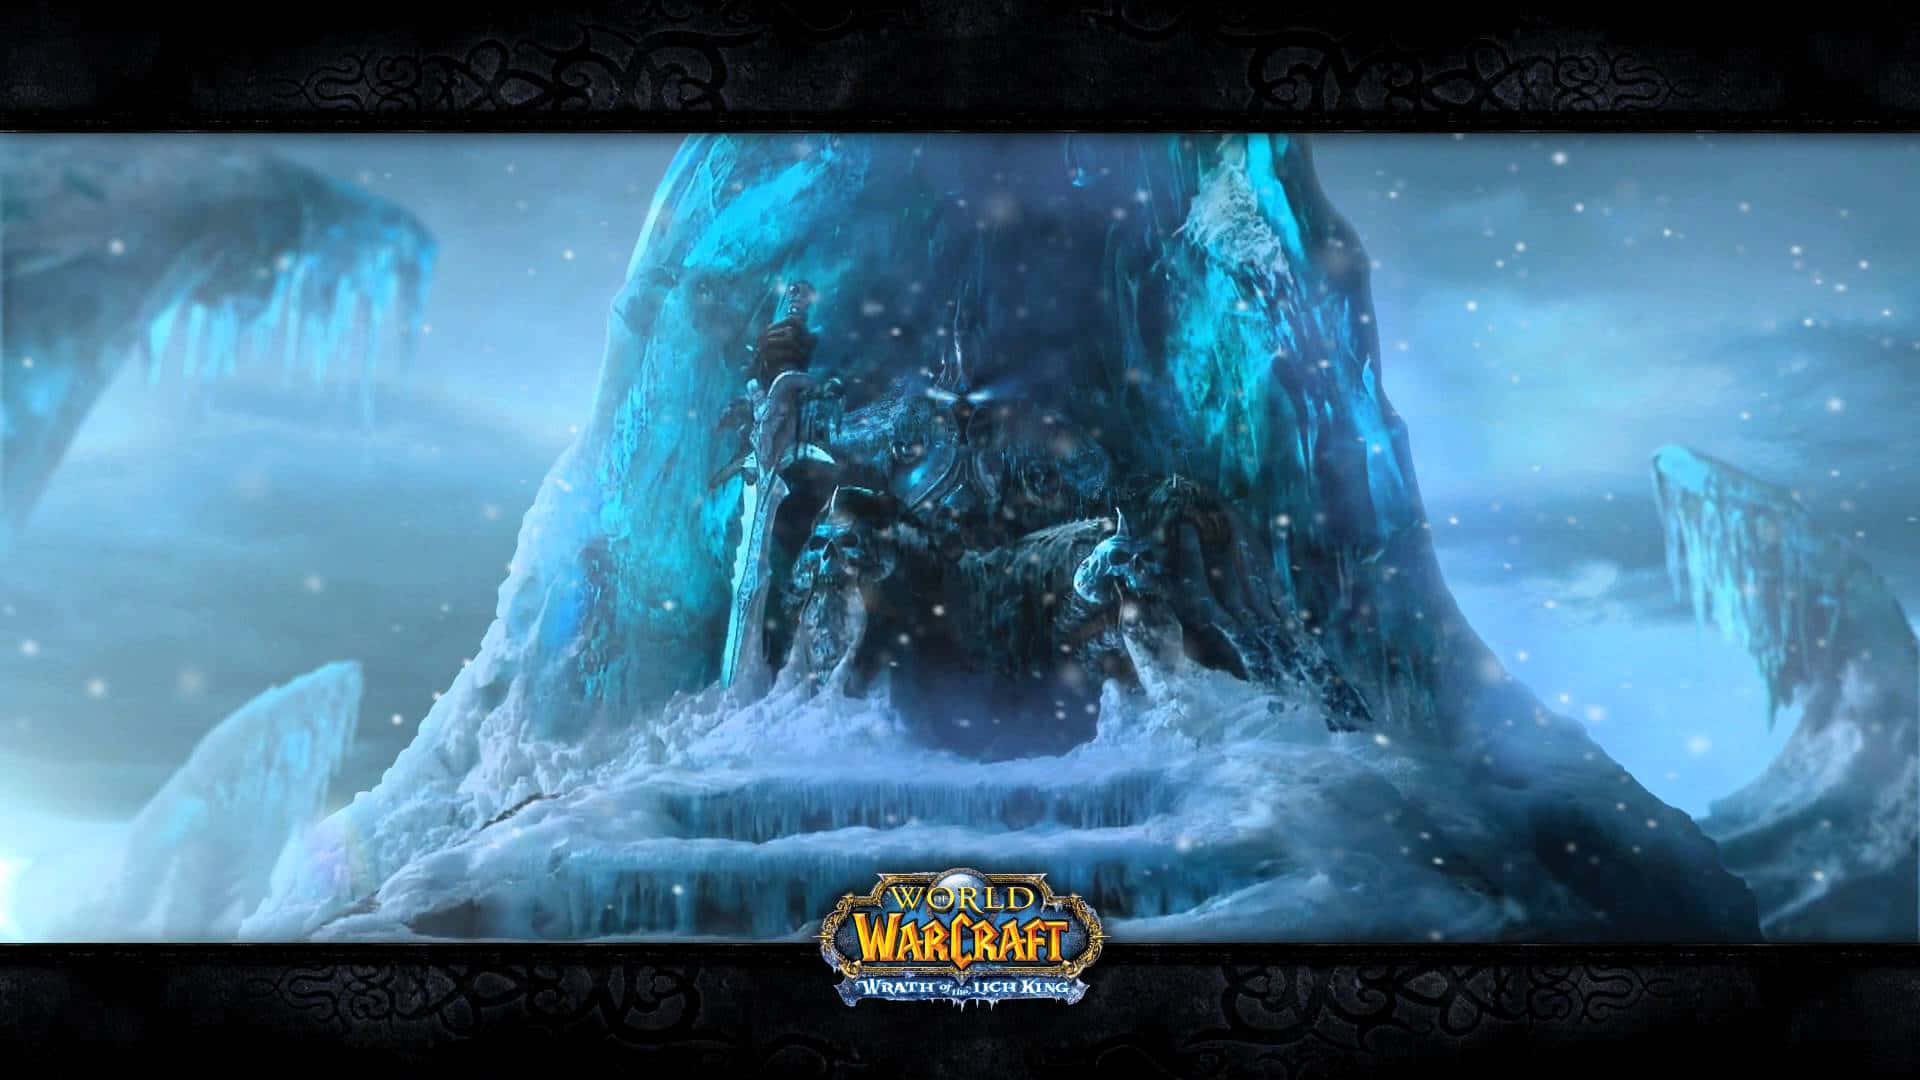 Worldof Warcraft Eiserner Thron Hintergrundbild. Wallpaper